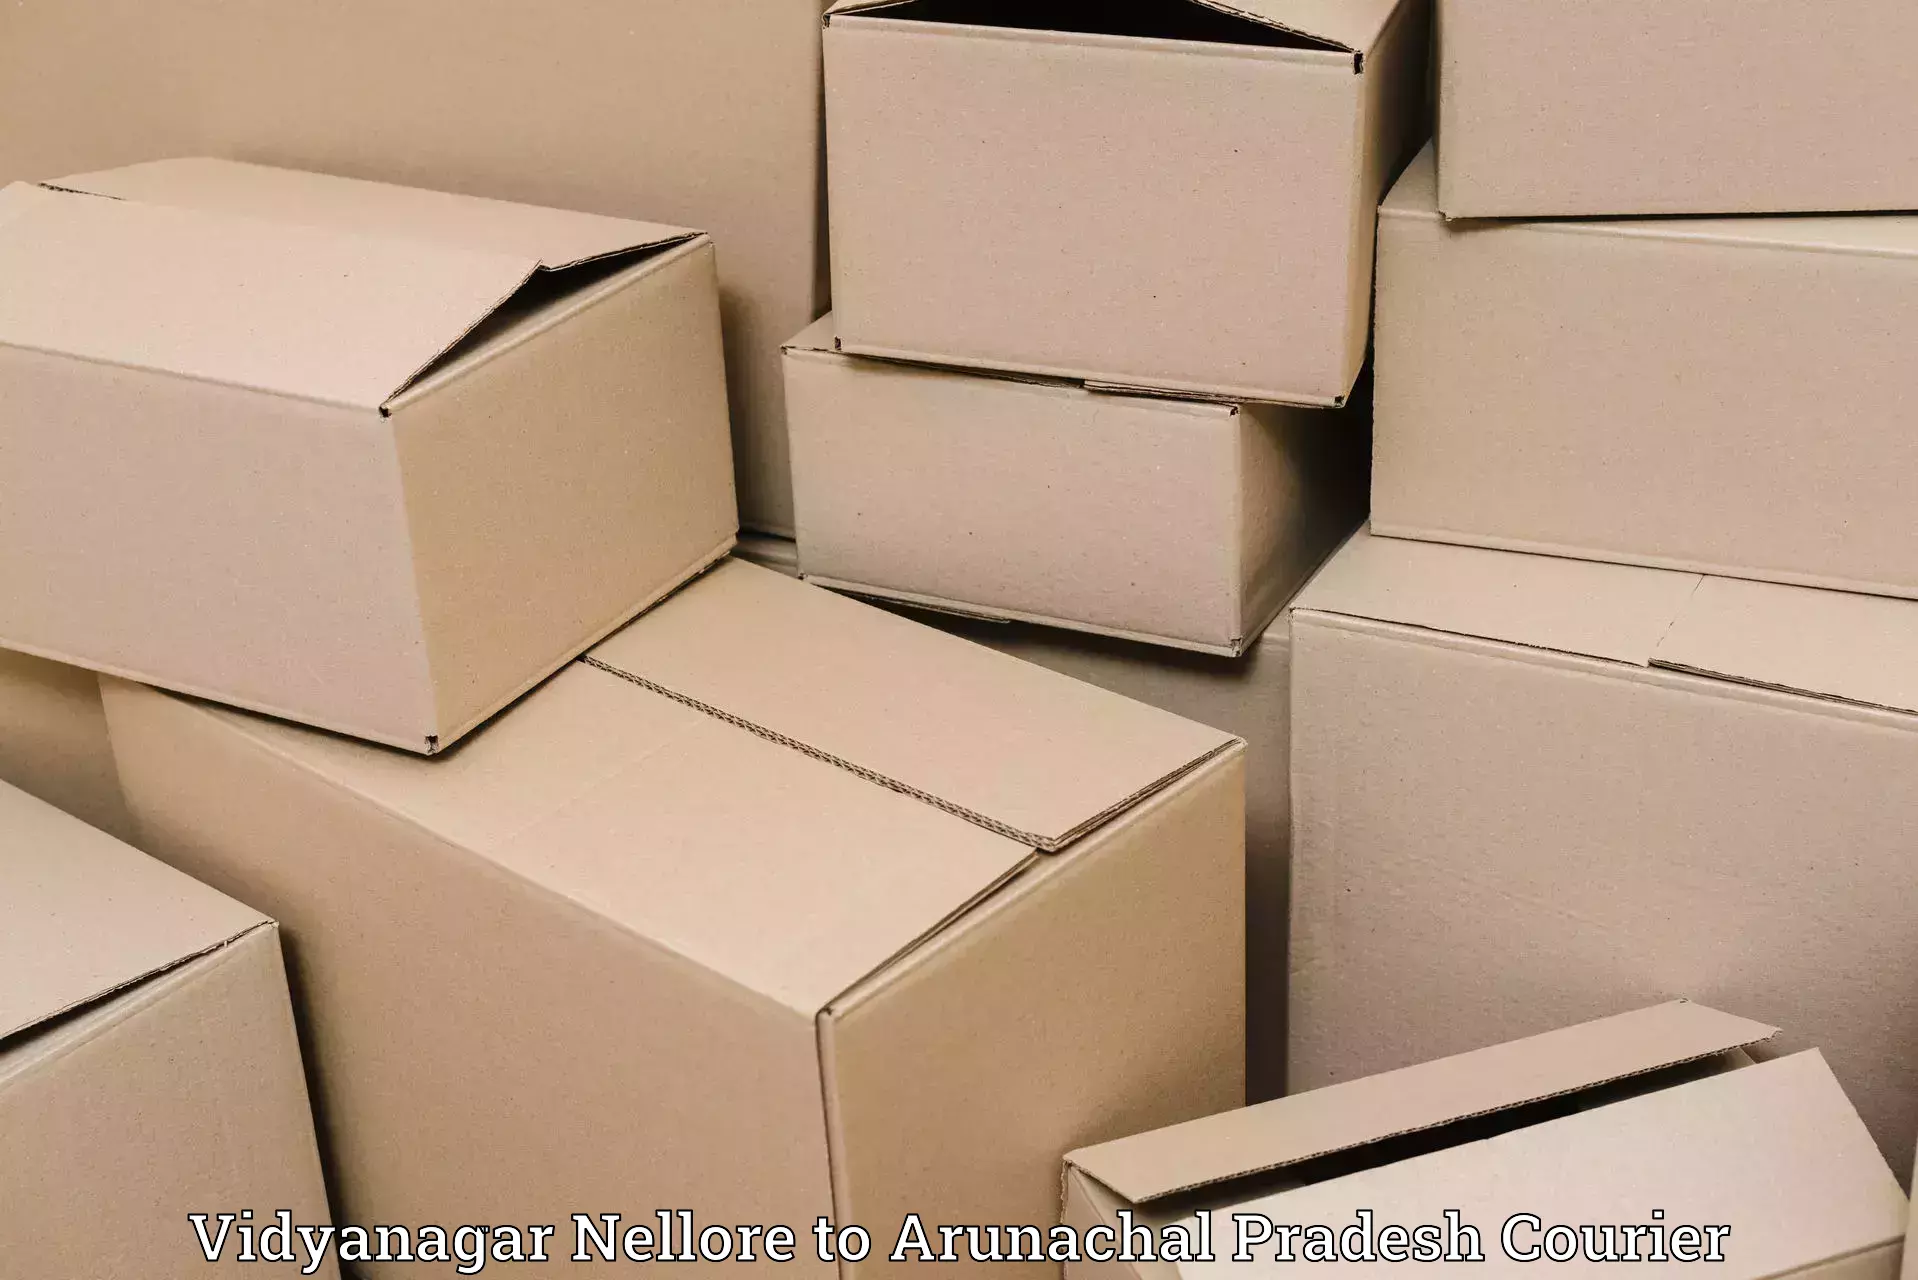 Luggage storage and delivery in Vidyanagar Nellore to Arunachal Pradesh